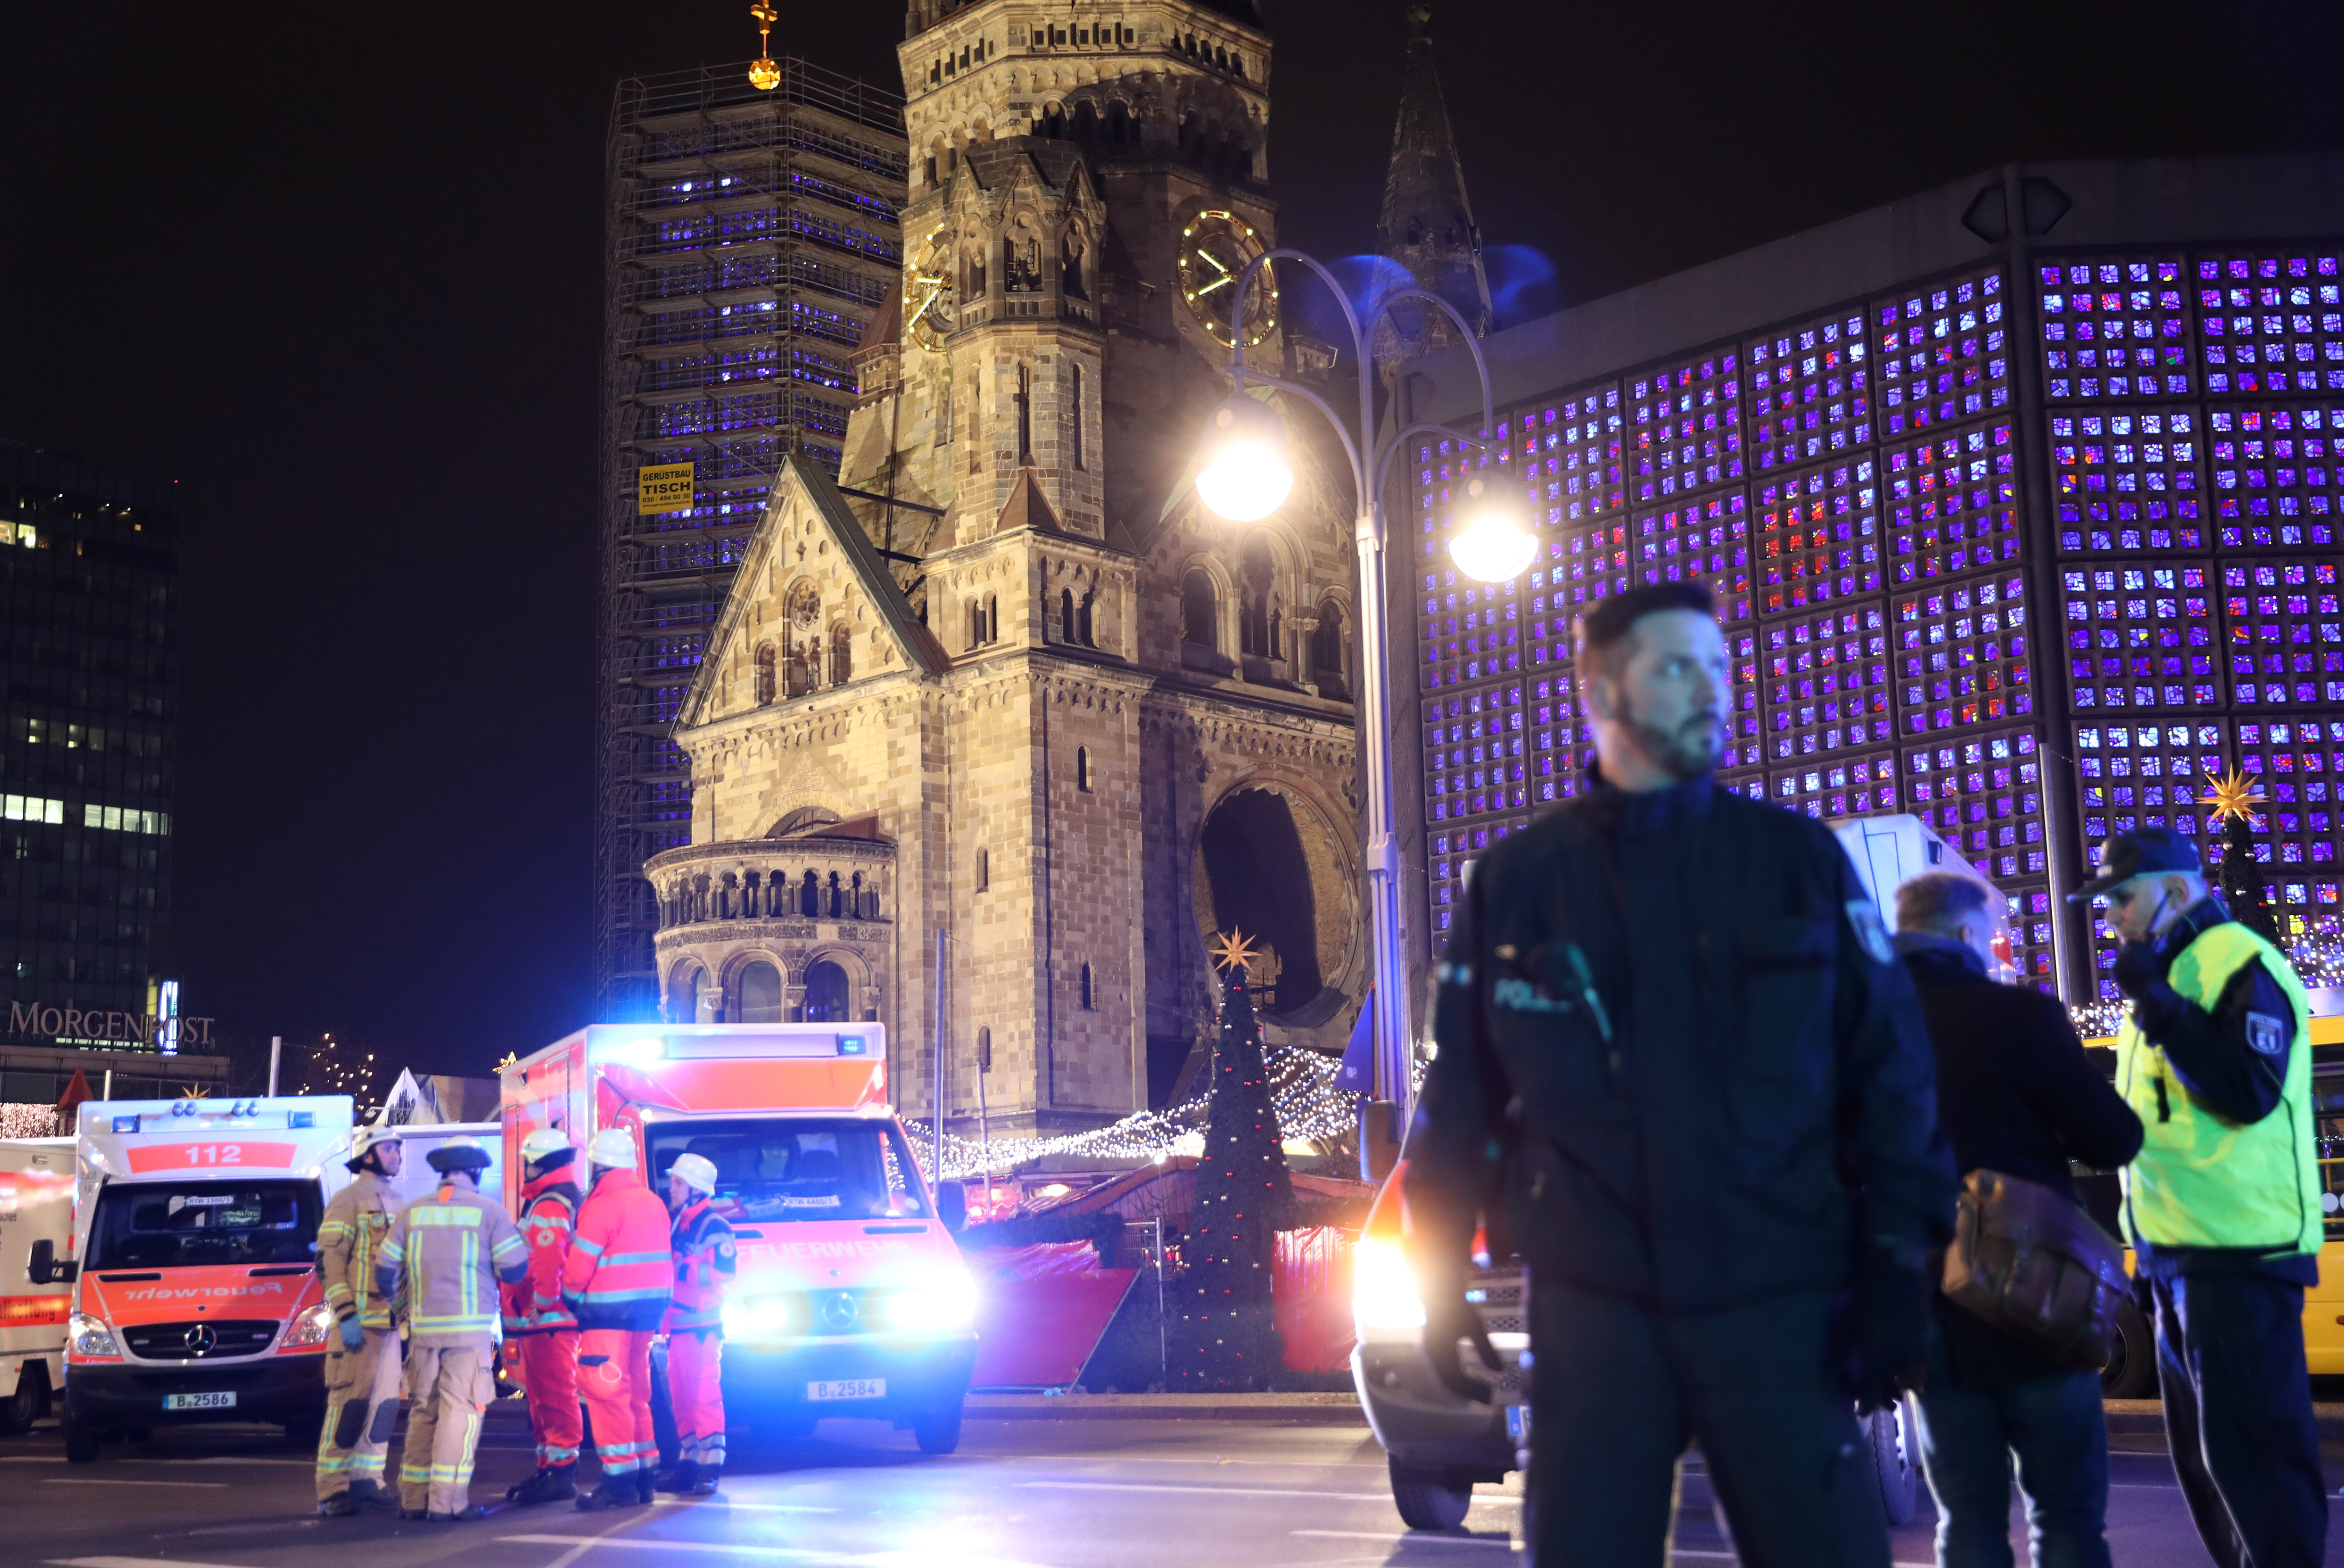 Egy tunéziai férfit keresnek a berlini terrortámadás miatt